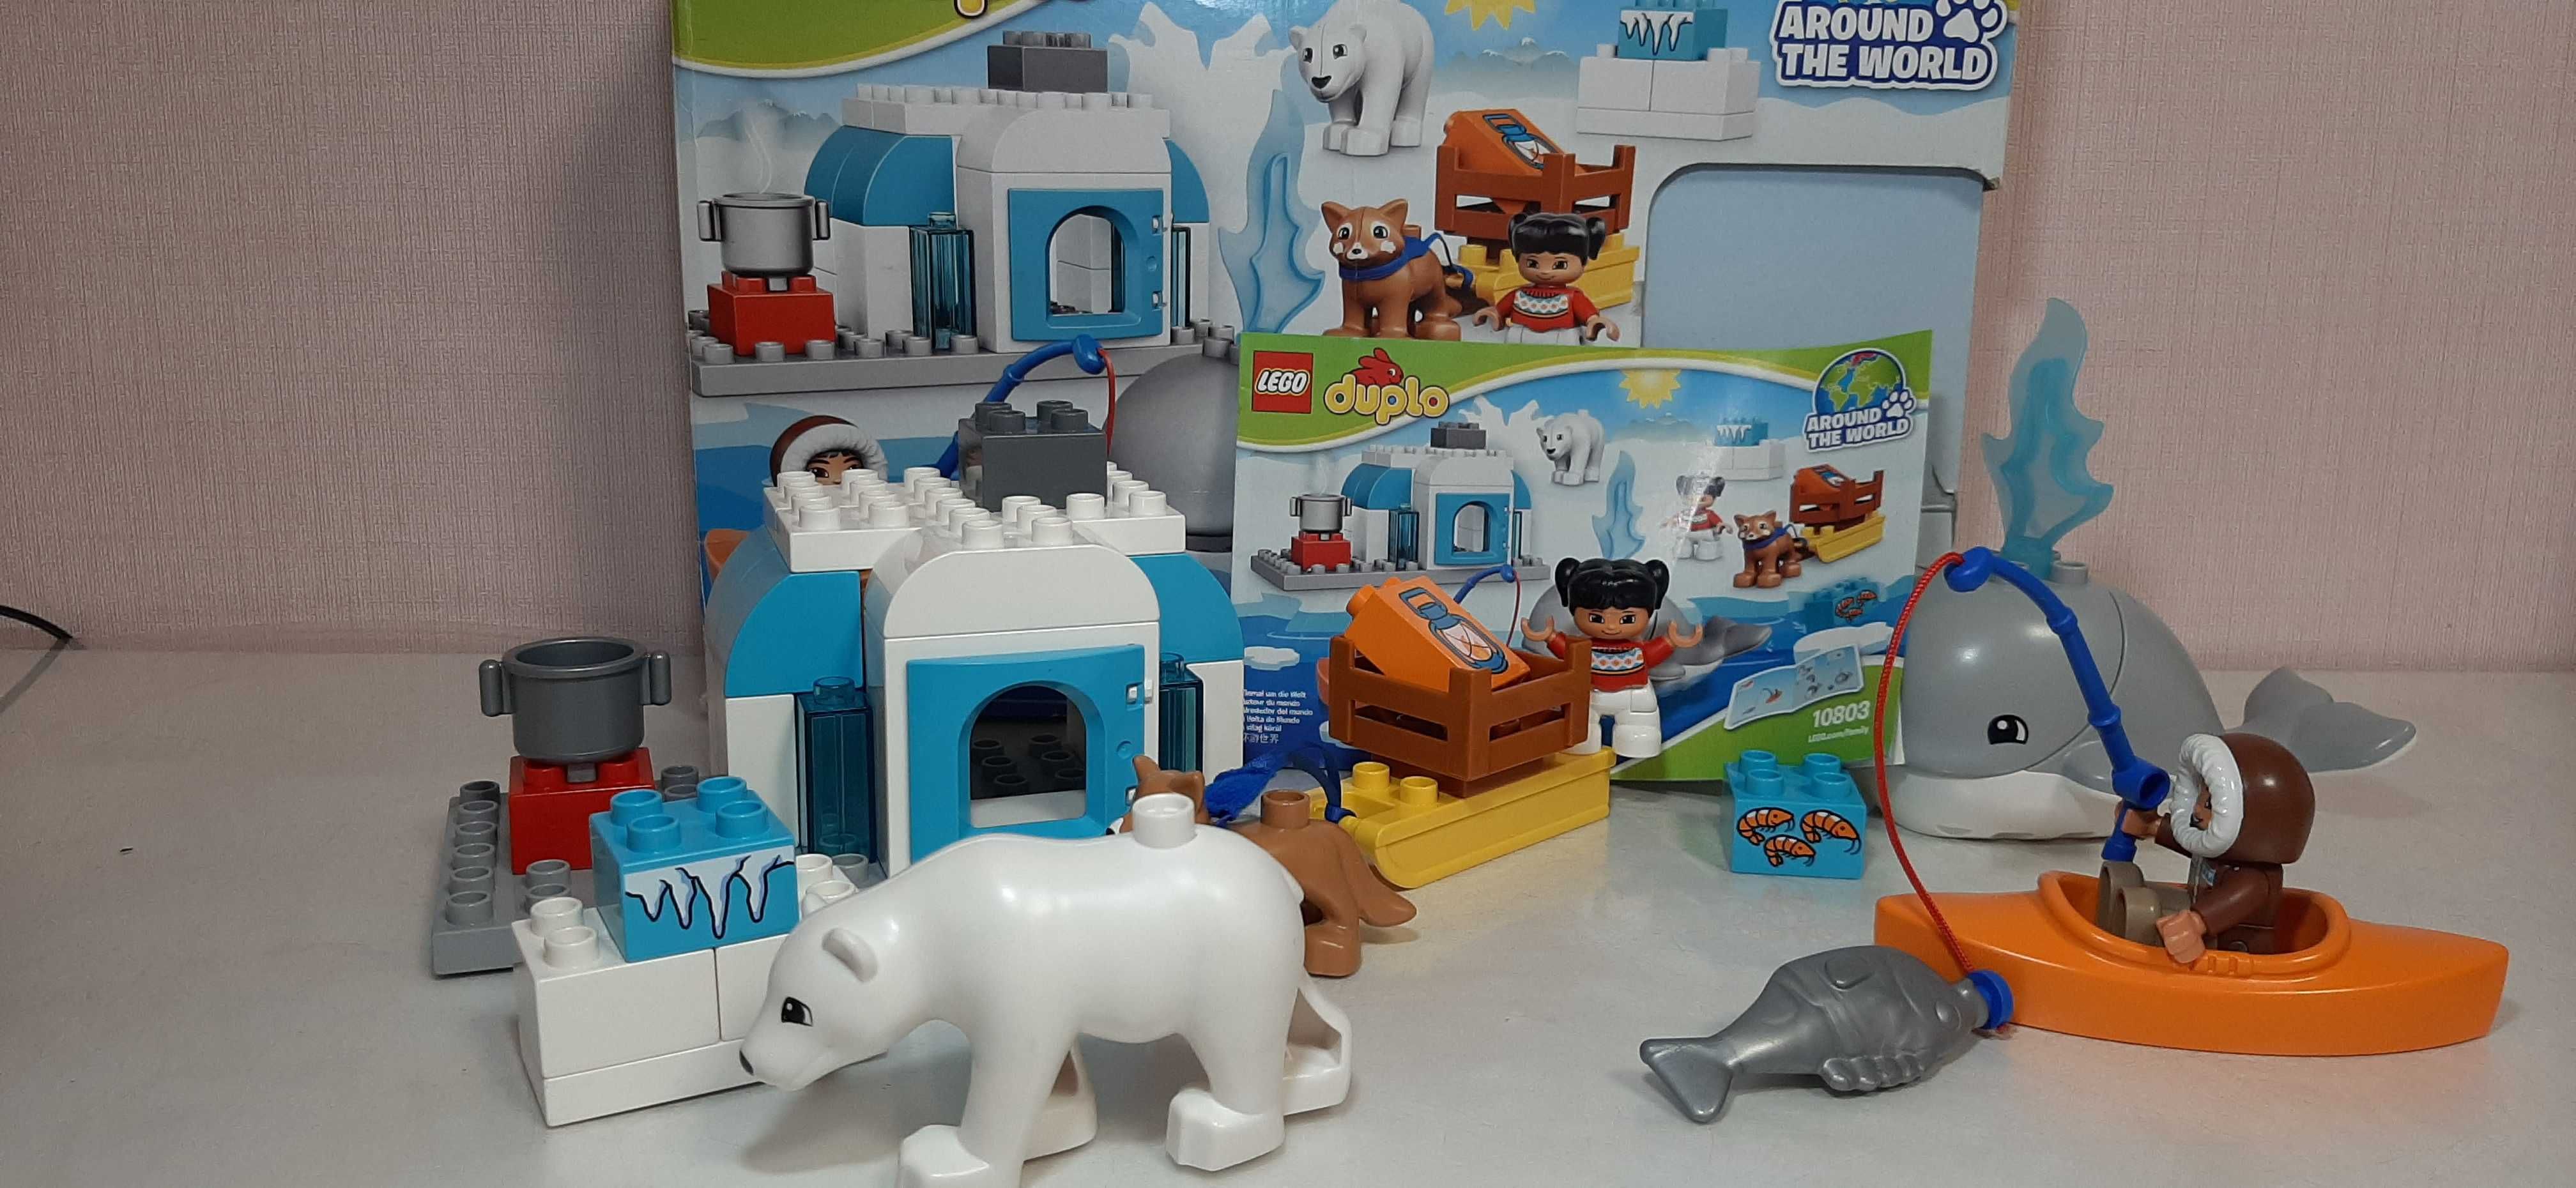 LEGO DUPLO Навколо світу, Арктика 10803